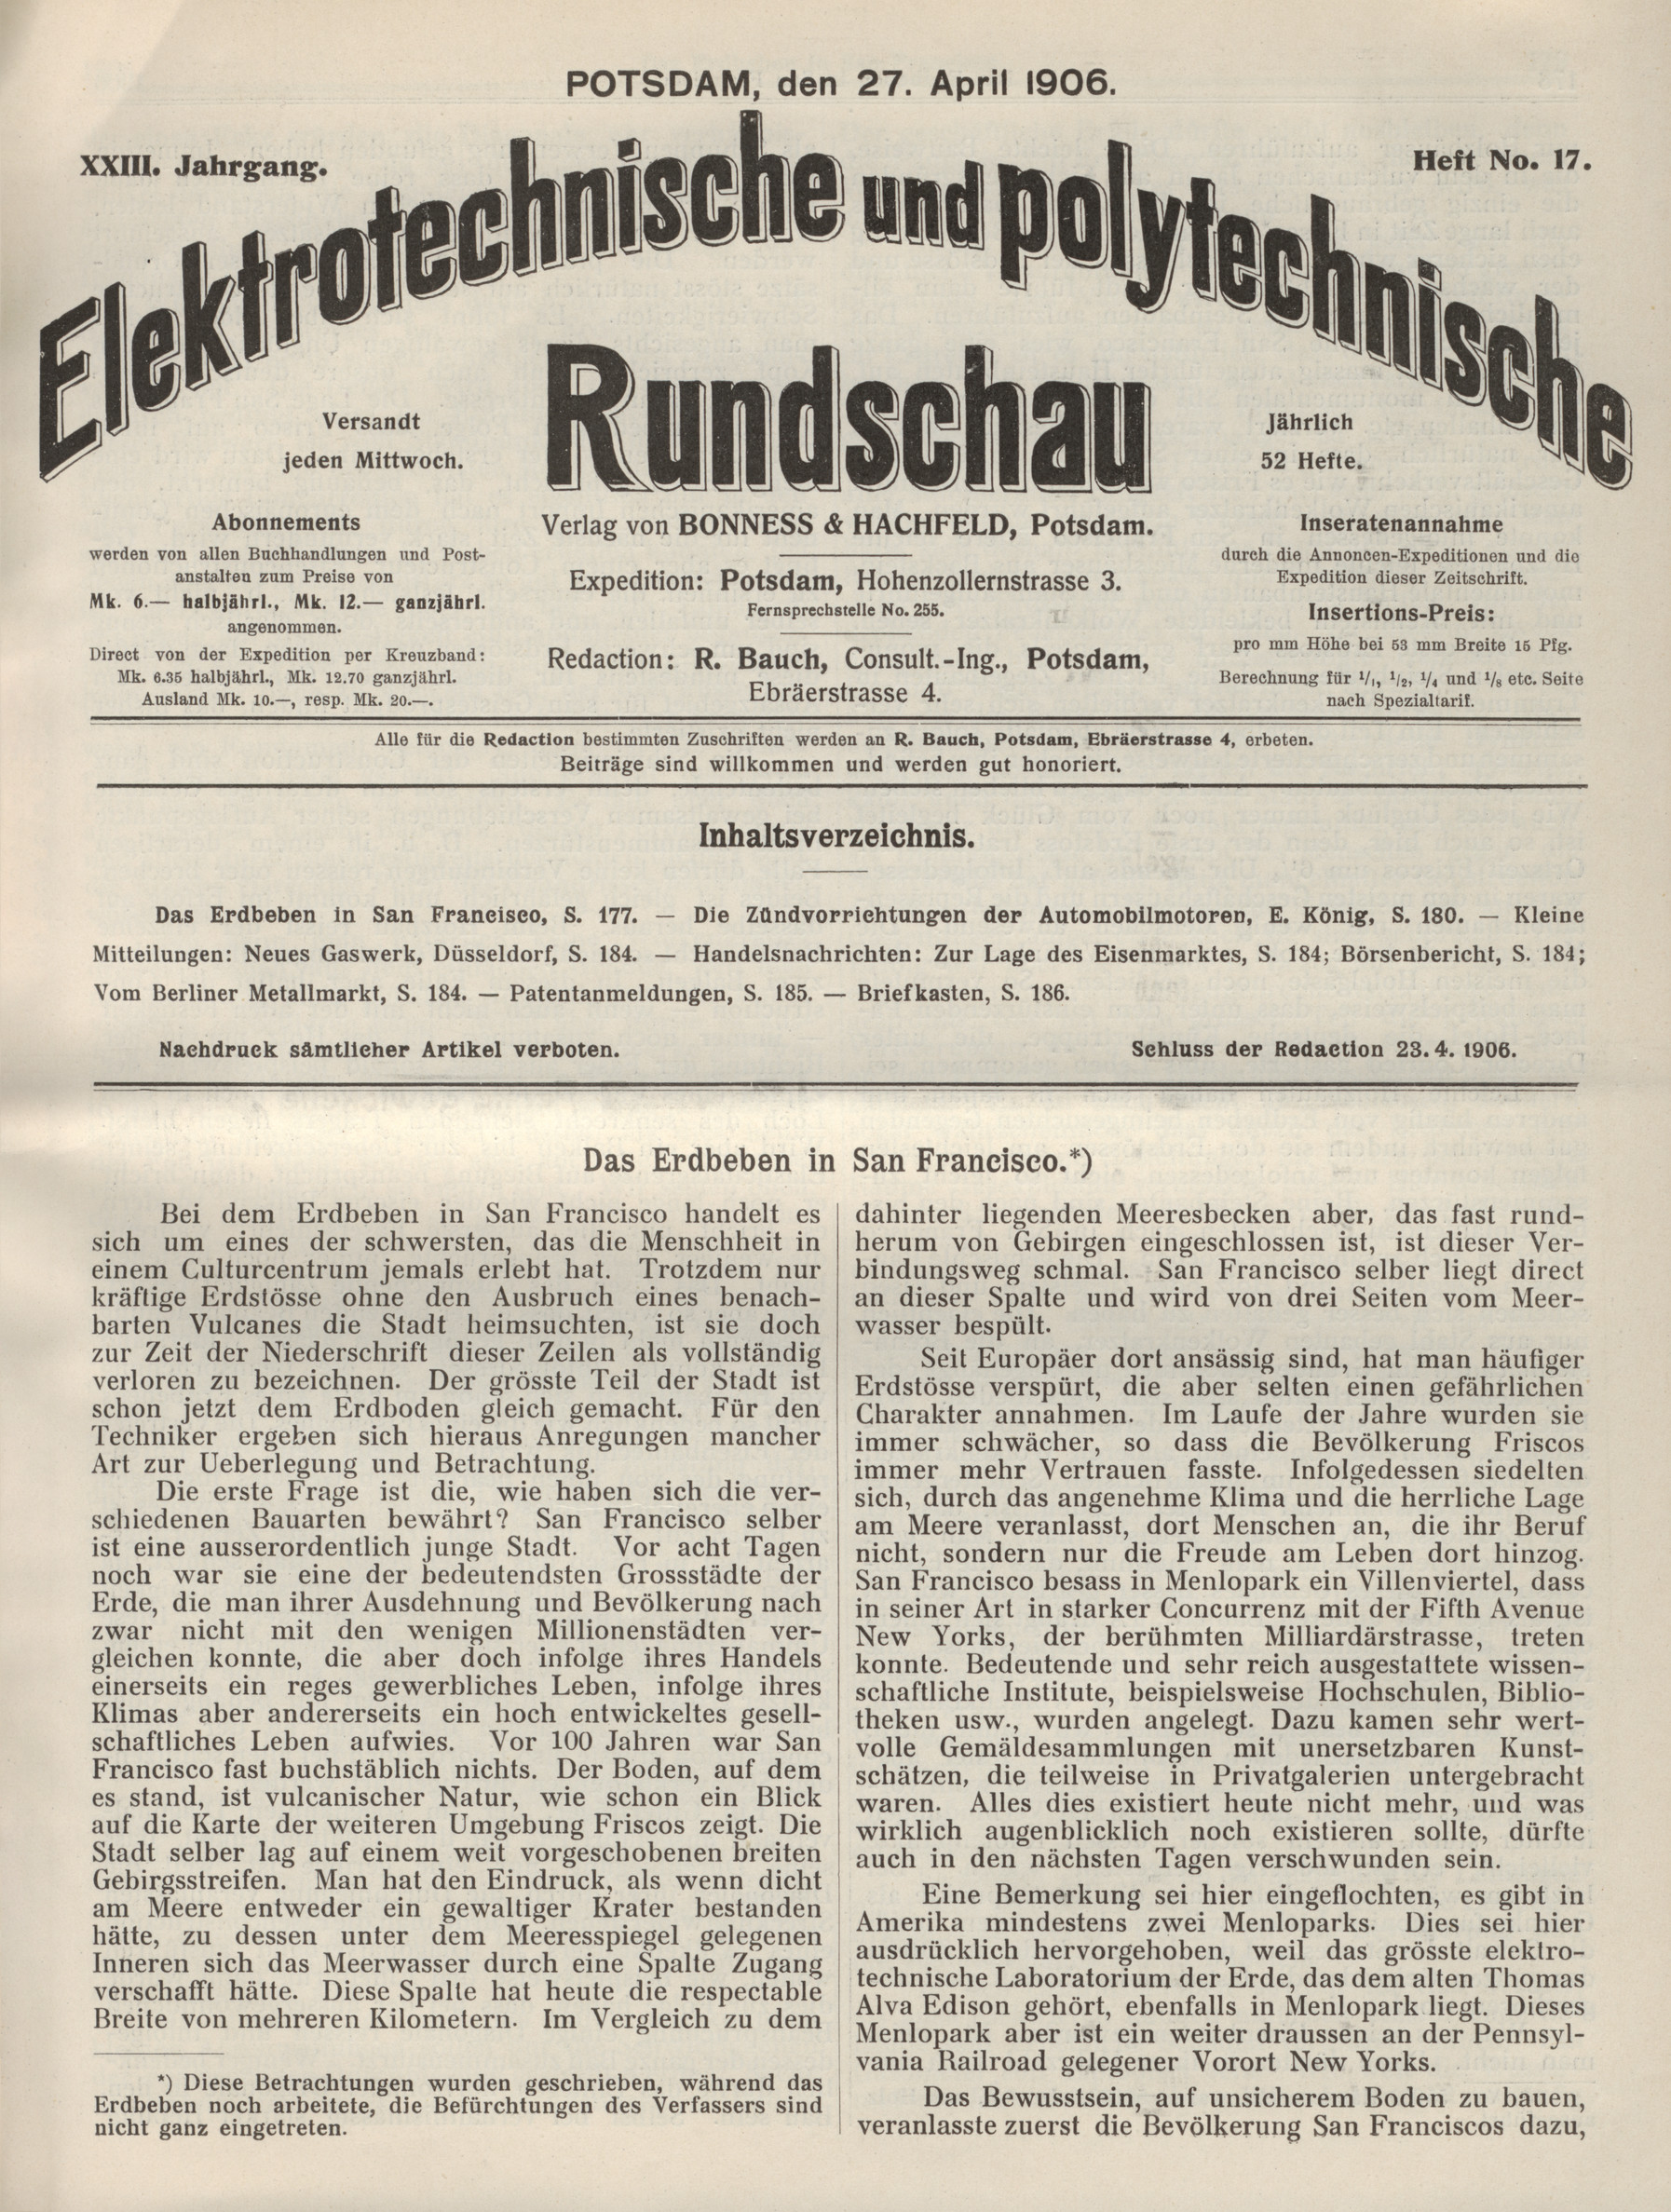 Elektrotechnische und polytechnische Rundschau, XXIII. Jahrgang, Heft No. 17